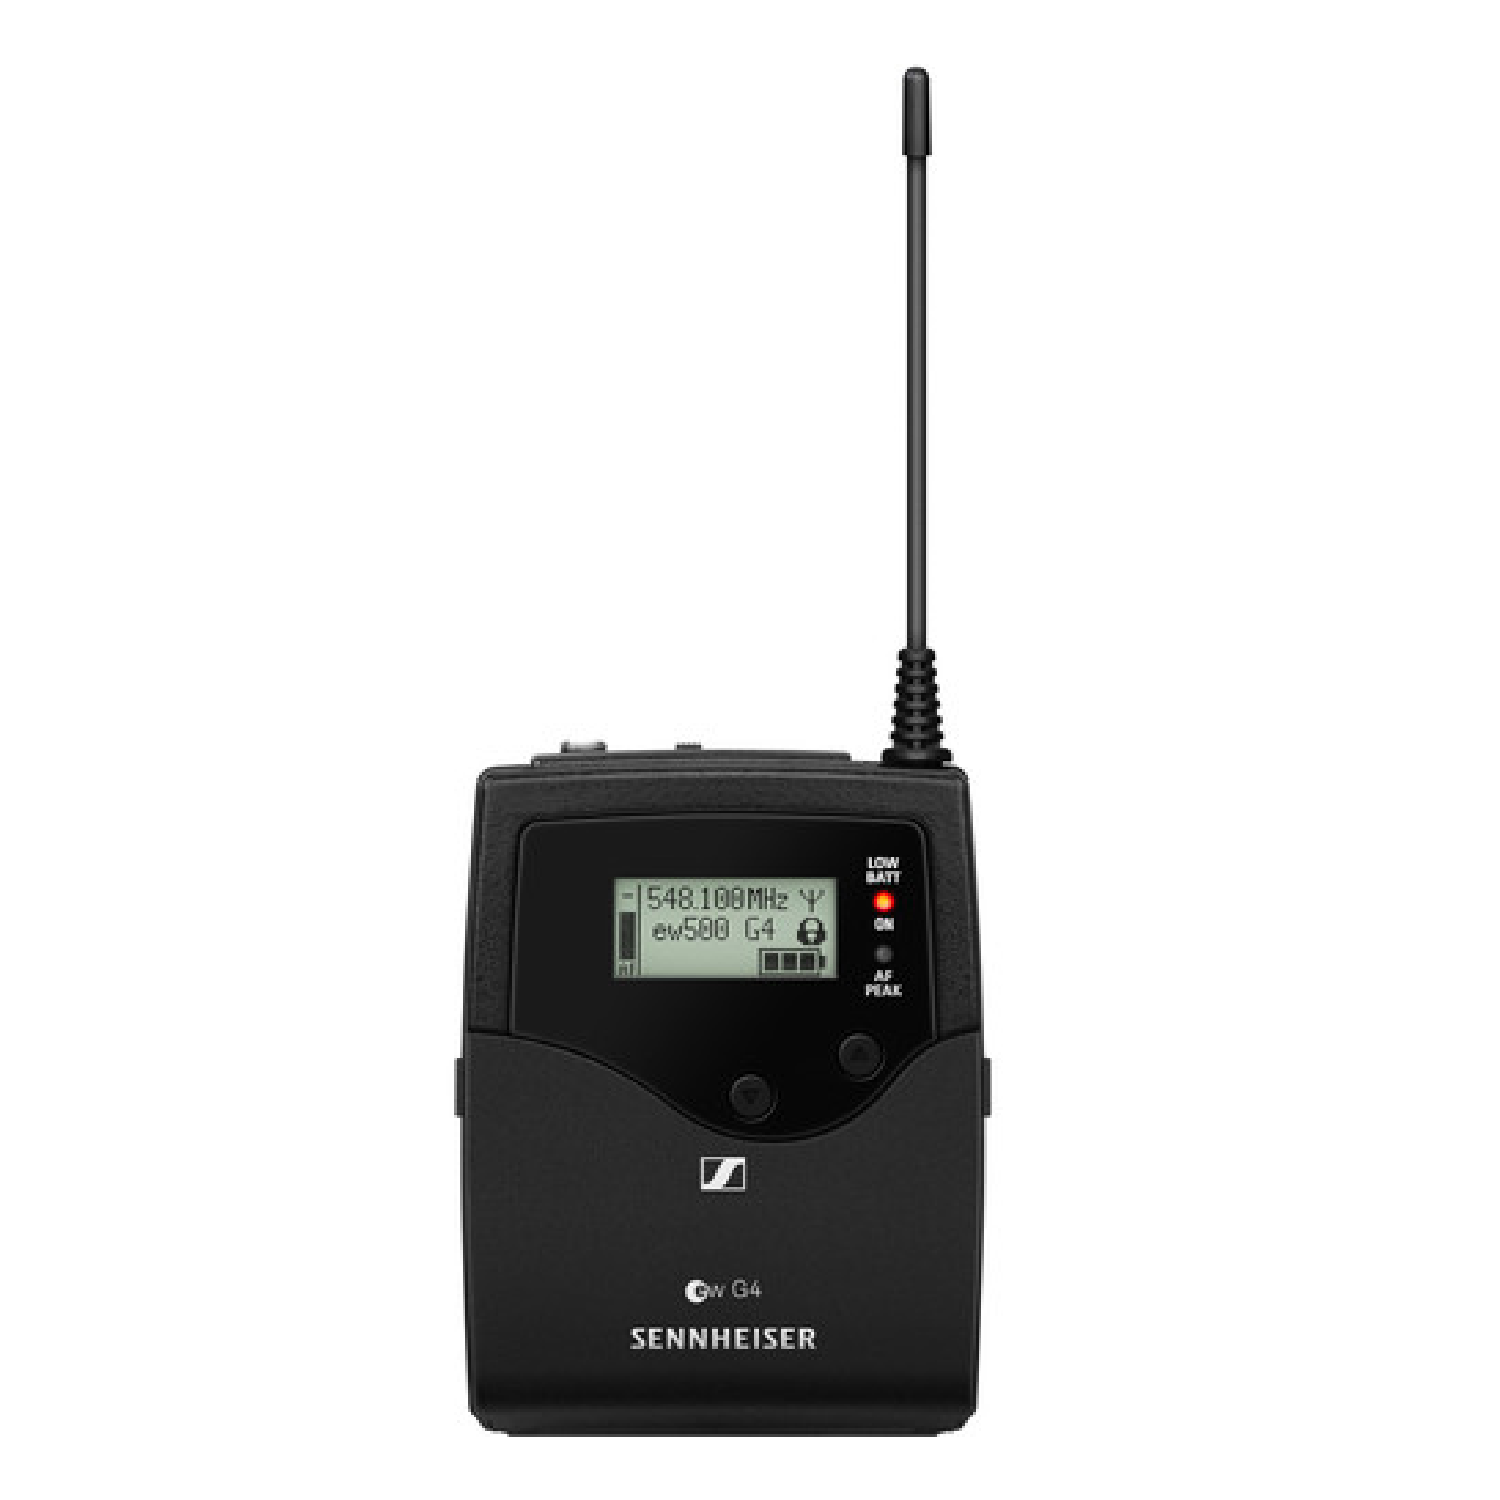 Wireless Bodypack Transmitter - AW+: 470 - 558 MHz   SK 500 G4 AW+ sennheiser